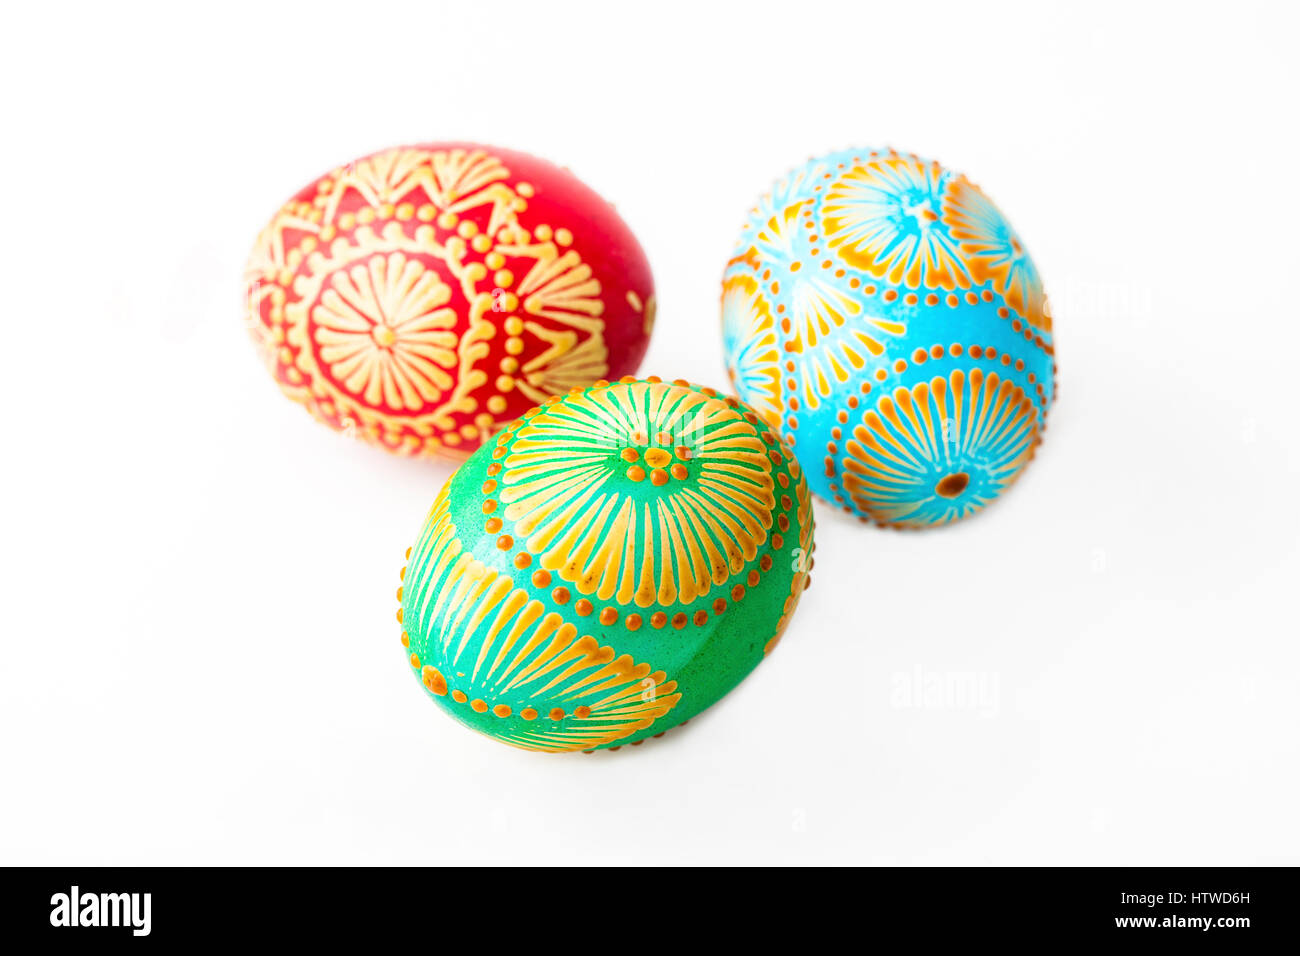 Ostereier, österlichen Eiern, dekoriert mit Bienenwachs - Ostern feiern. Seine alte Tradition in Litauen, Osteuropa. Stockfoto